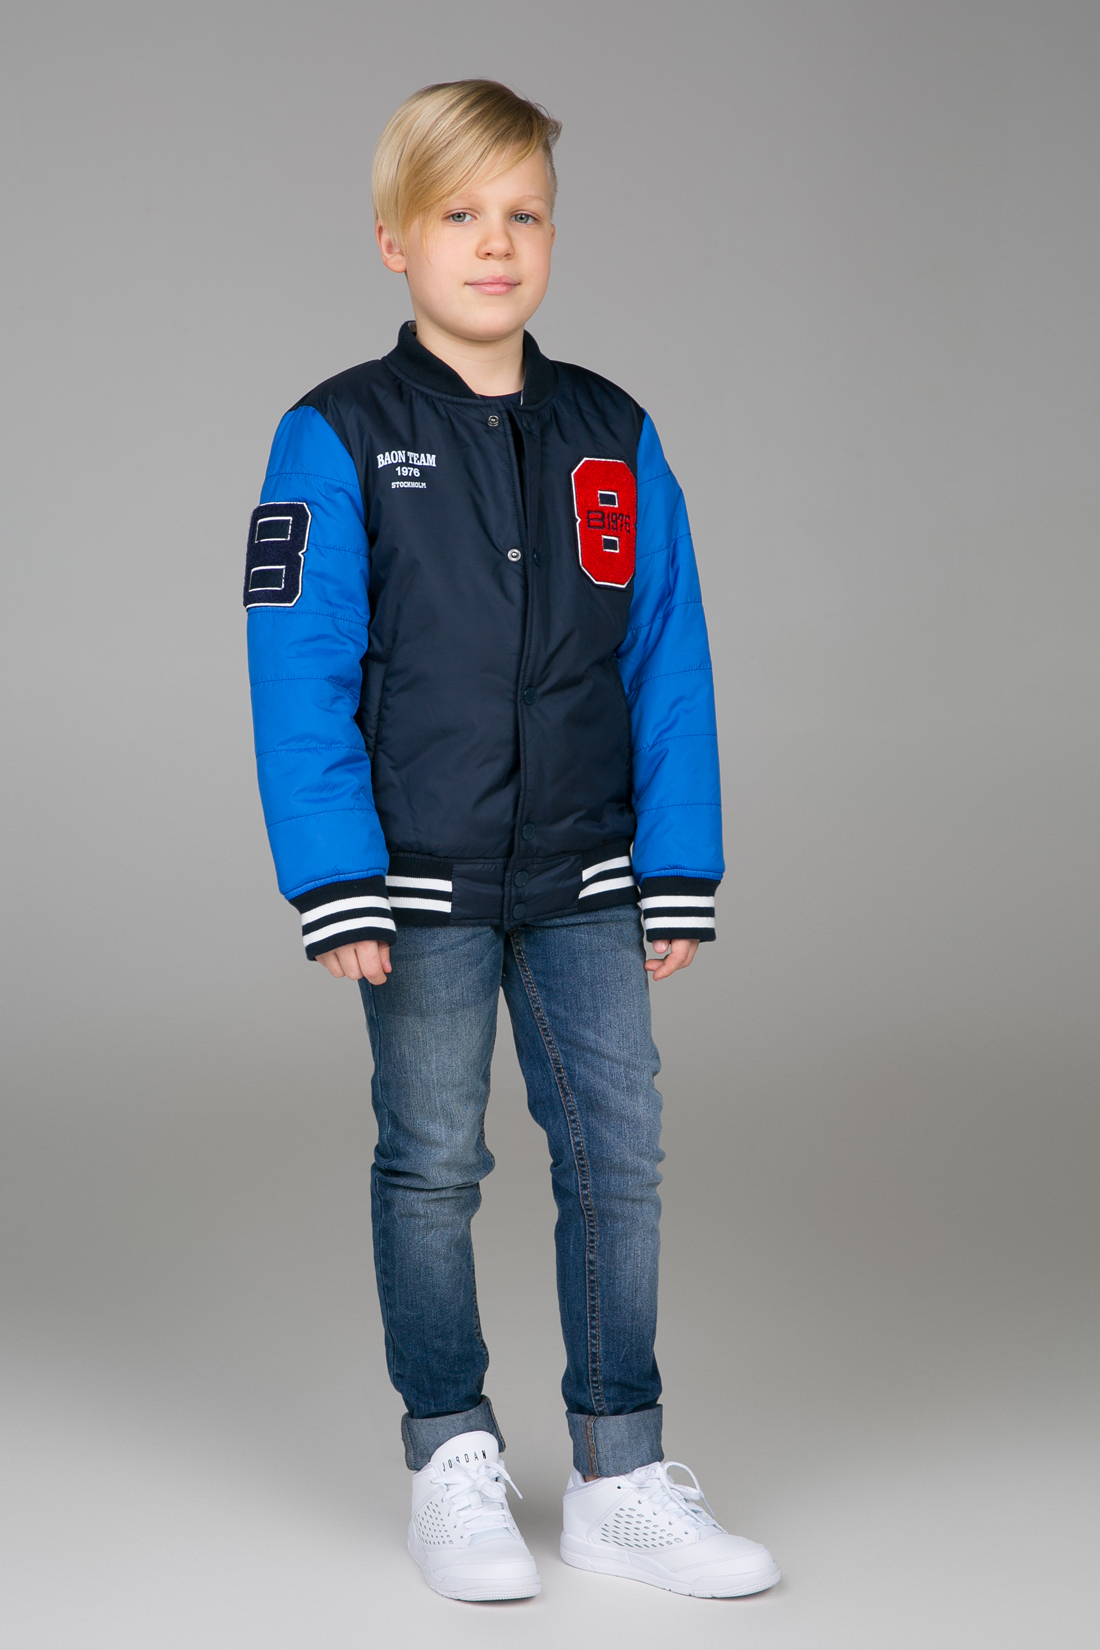 Куртка для мальчика (арт. baon BJ538003), размер 146-152, цвет синий Куртка для мальчика (арт. baon BJ538003) - фото 1